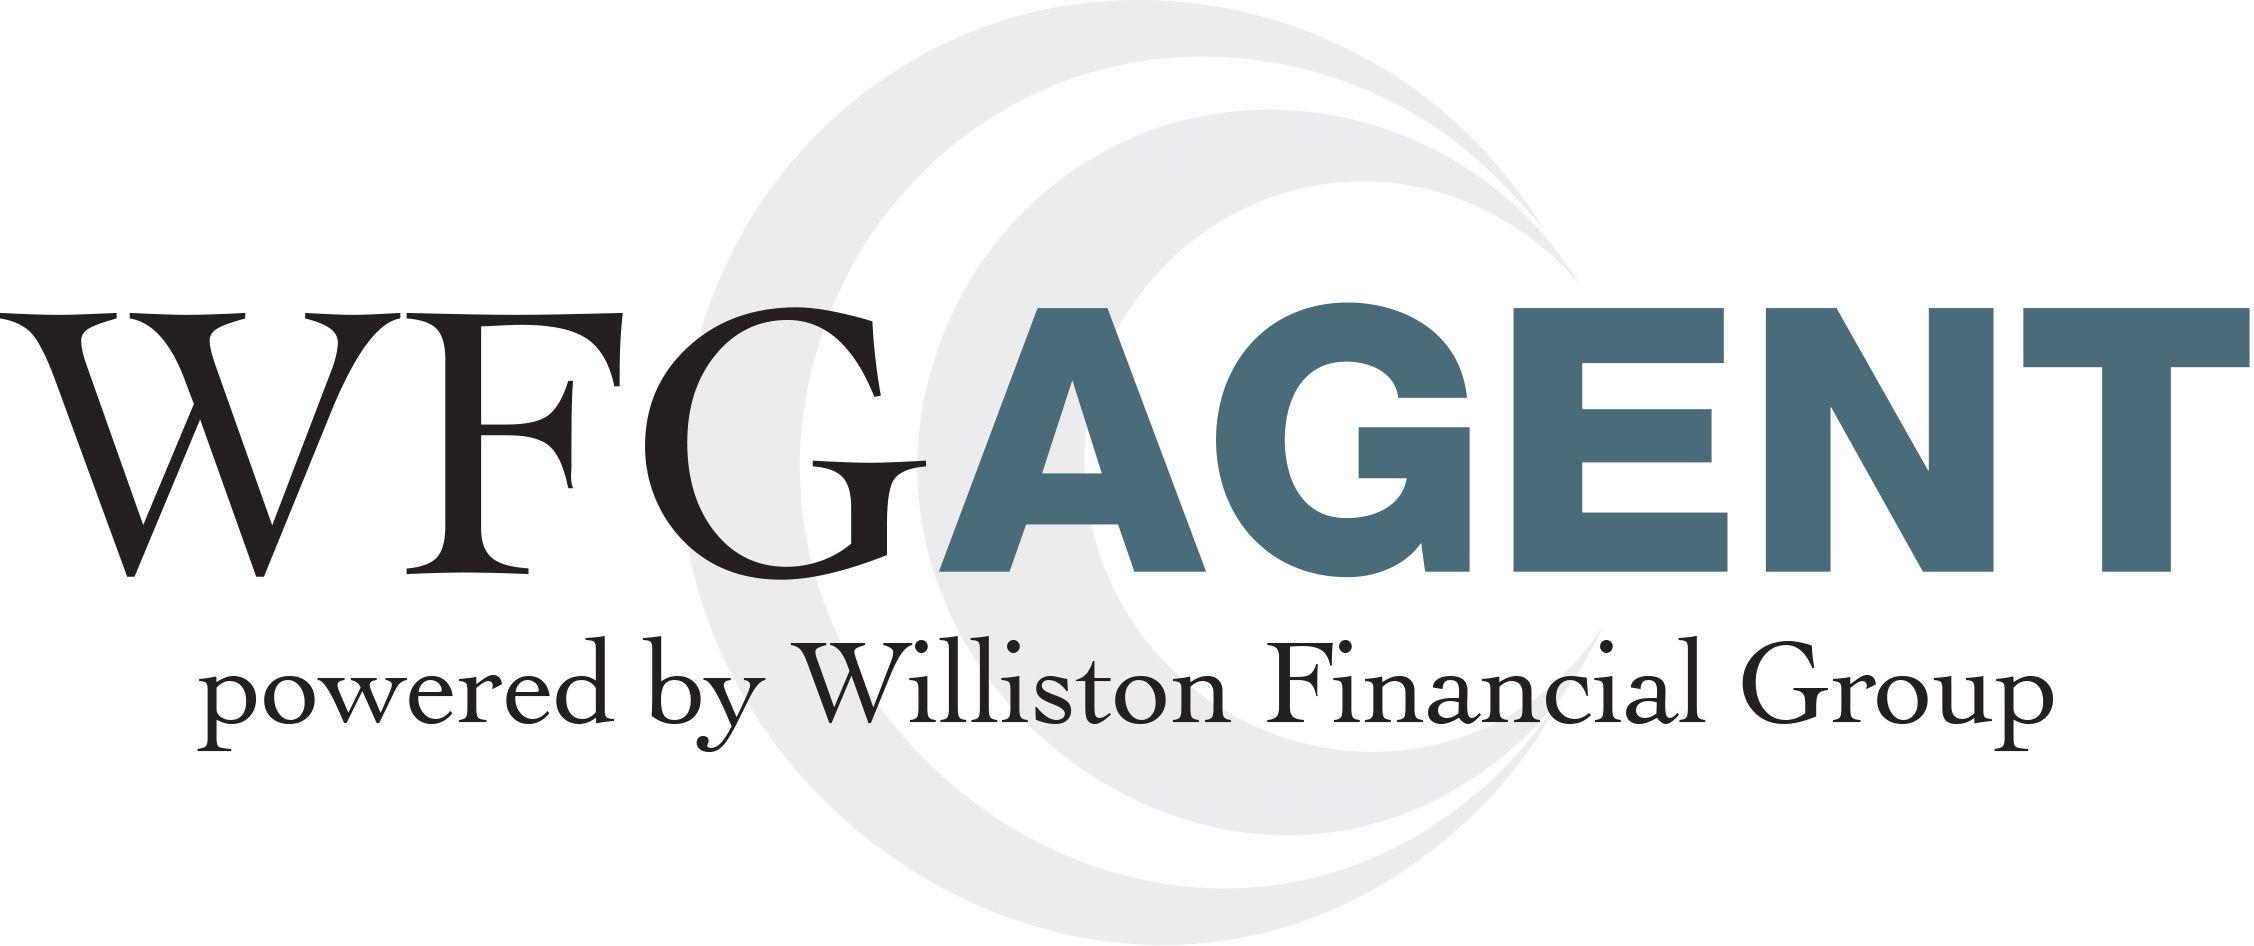 WFG Logo - WFG